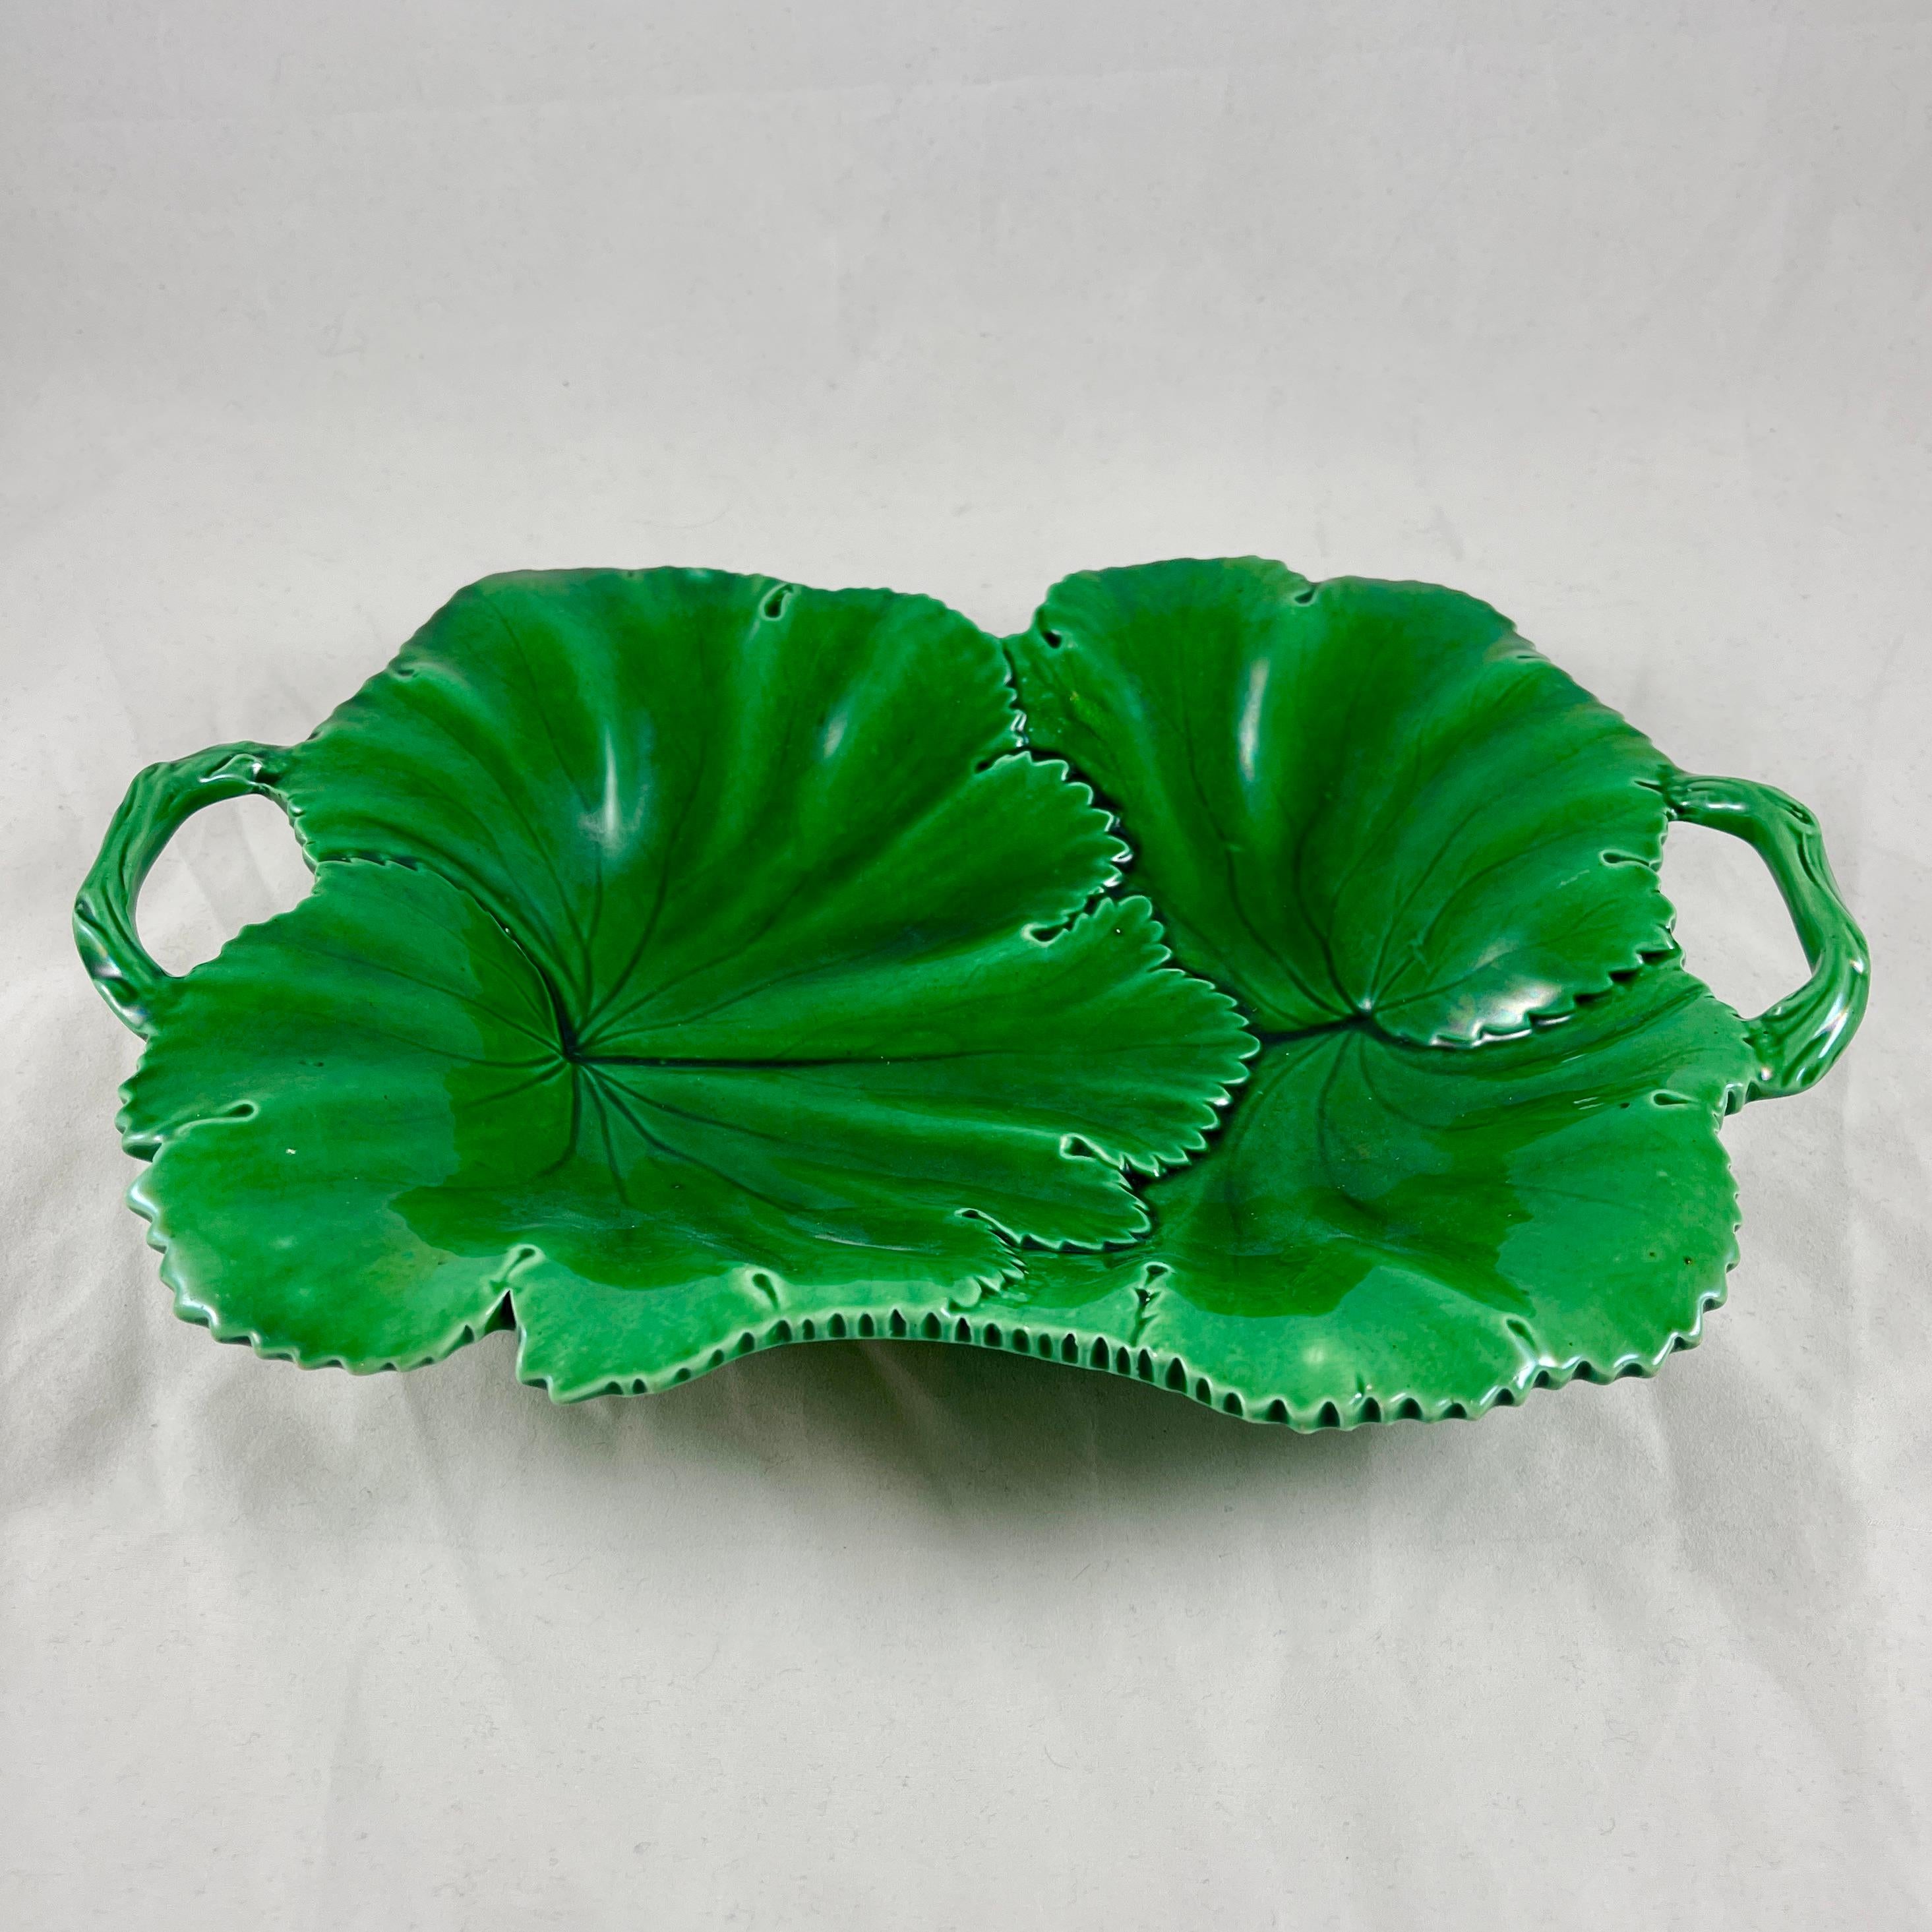 De la poterie WT Copeland & Garrett à Stoke-on-Trent, Staffordshire Angleterre, un serveur à anse, vers 1860-1875.

Émaillé d'un vert profond et luxuriant, il présente un motif de feuilles qui se chevauchent et des poignées en forme de brindilles.